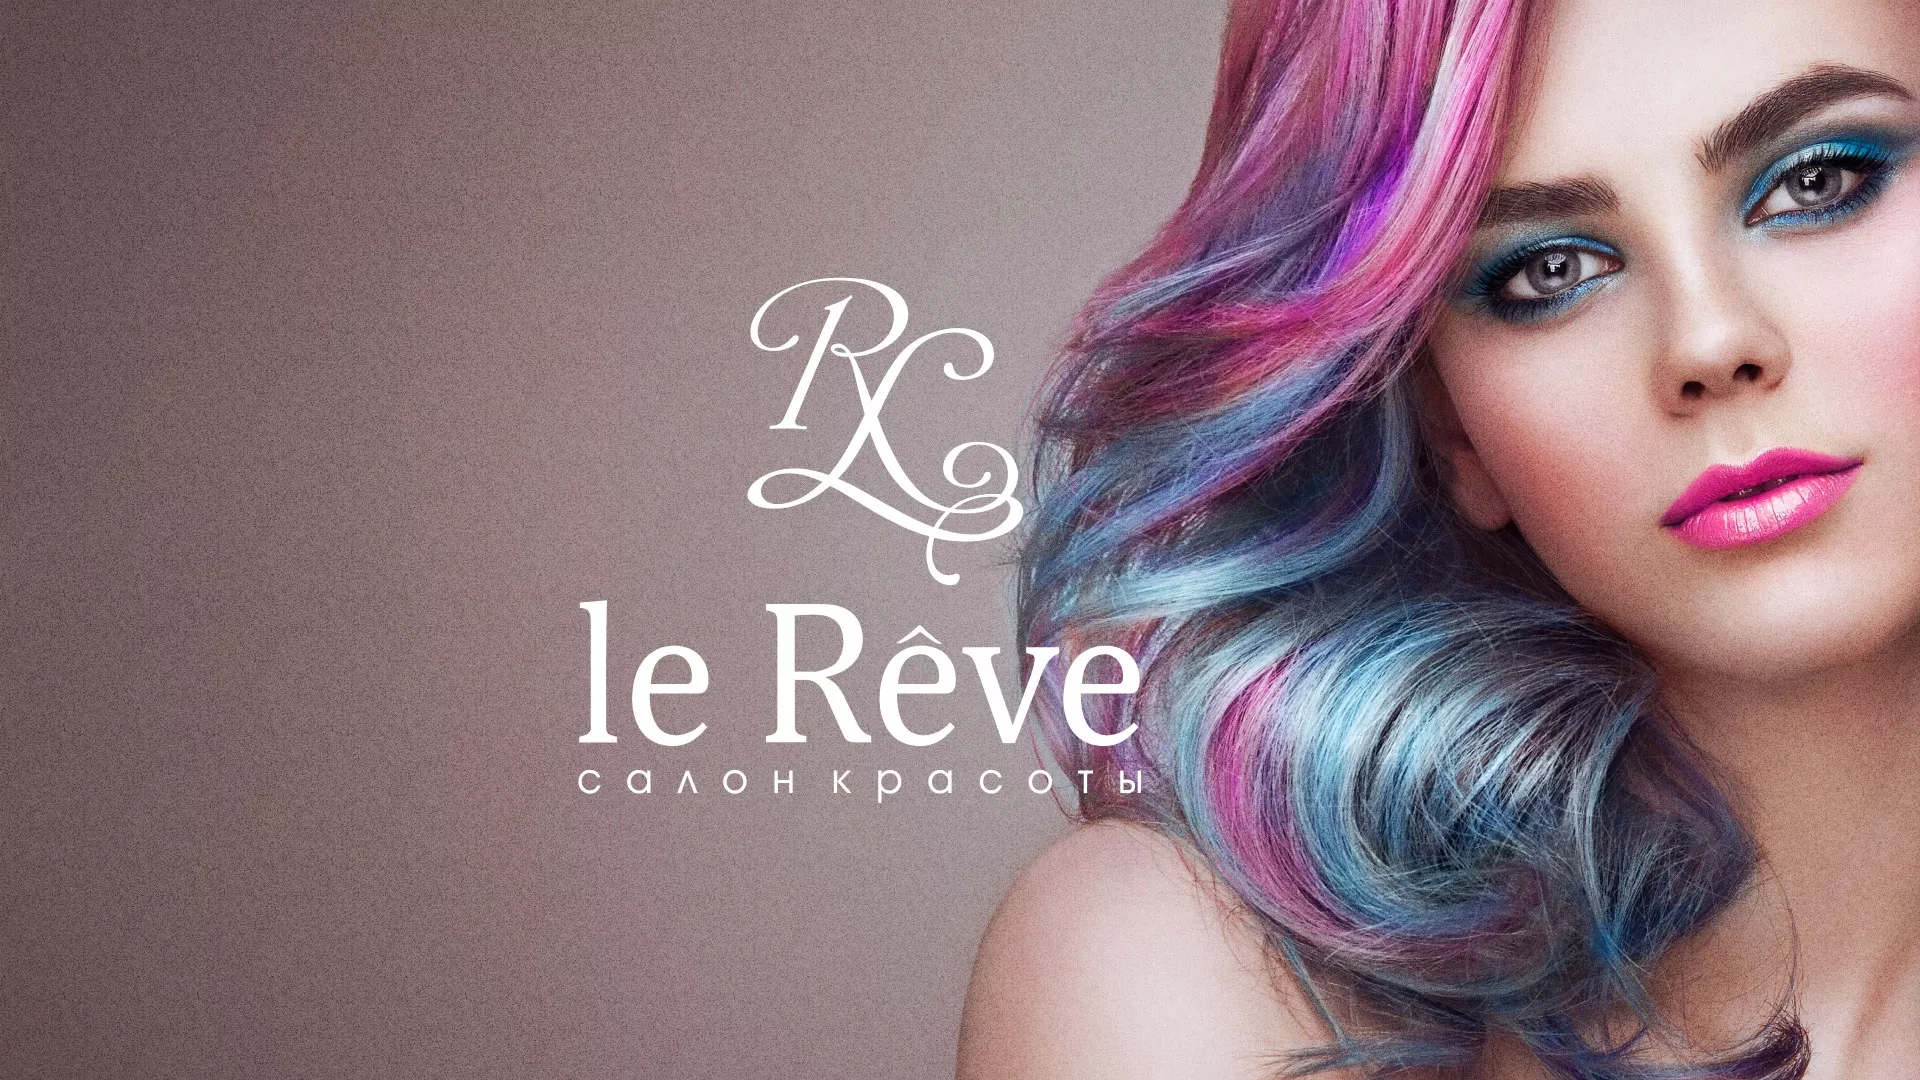 Создание сайта для салона красоты «Le Reve» в Острове